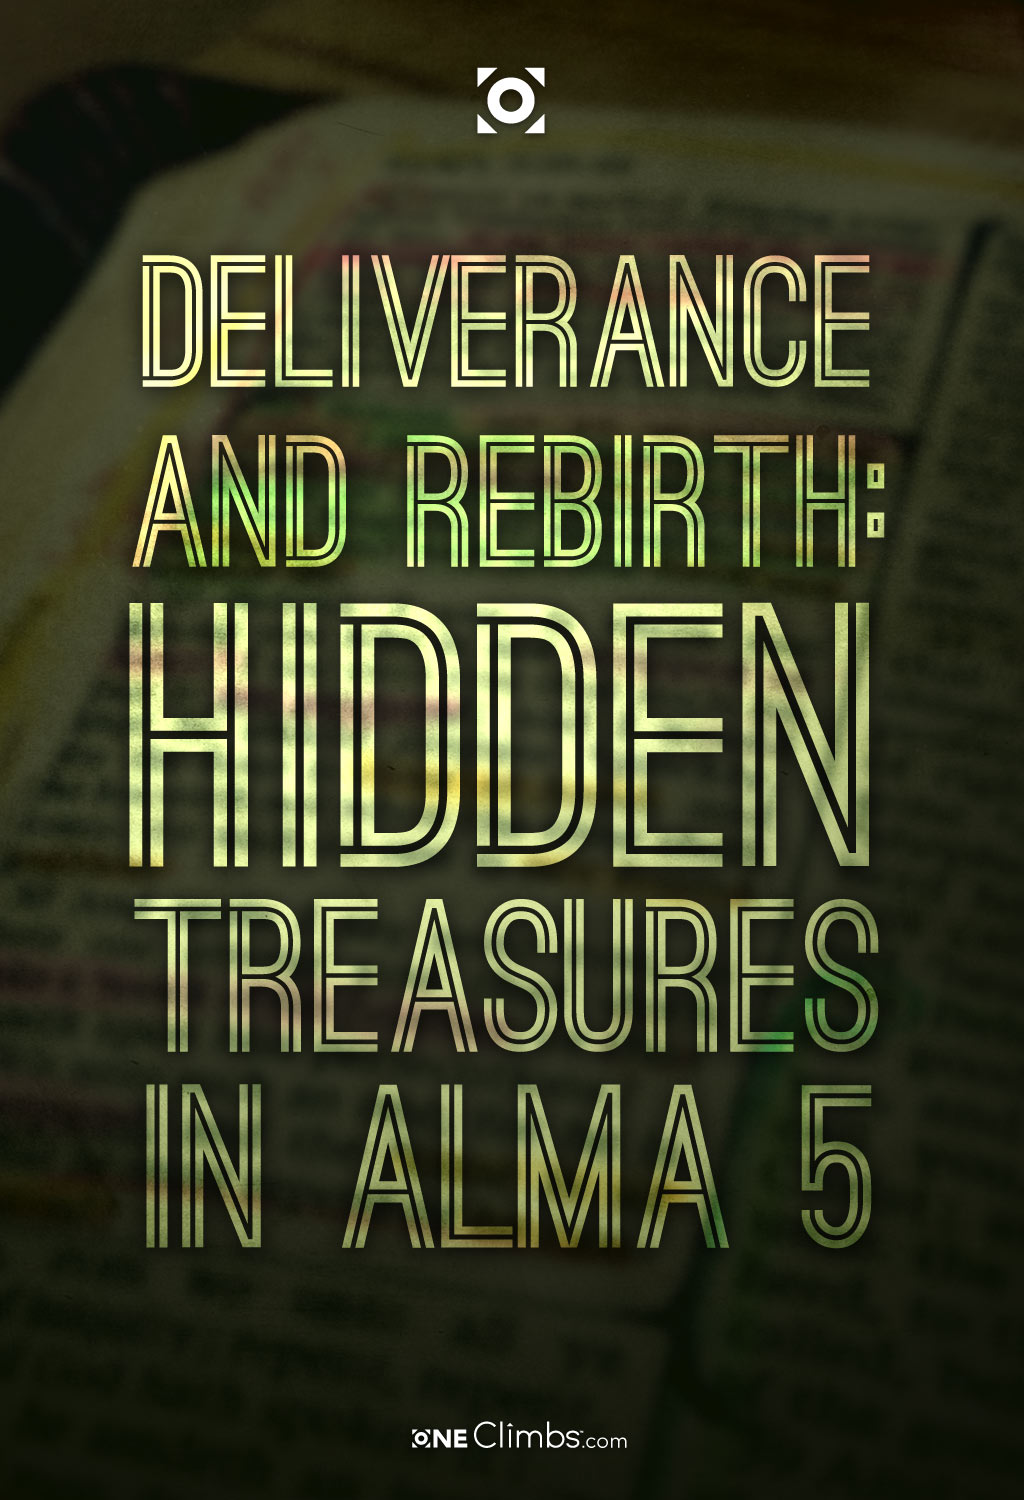 alma-5-deliverance-rebirth